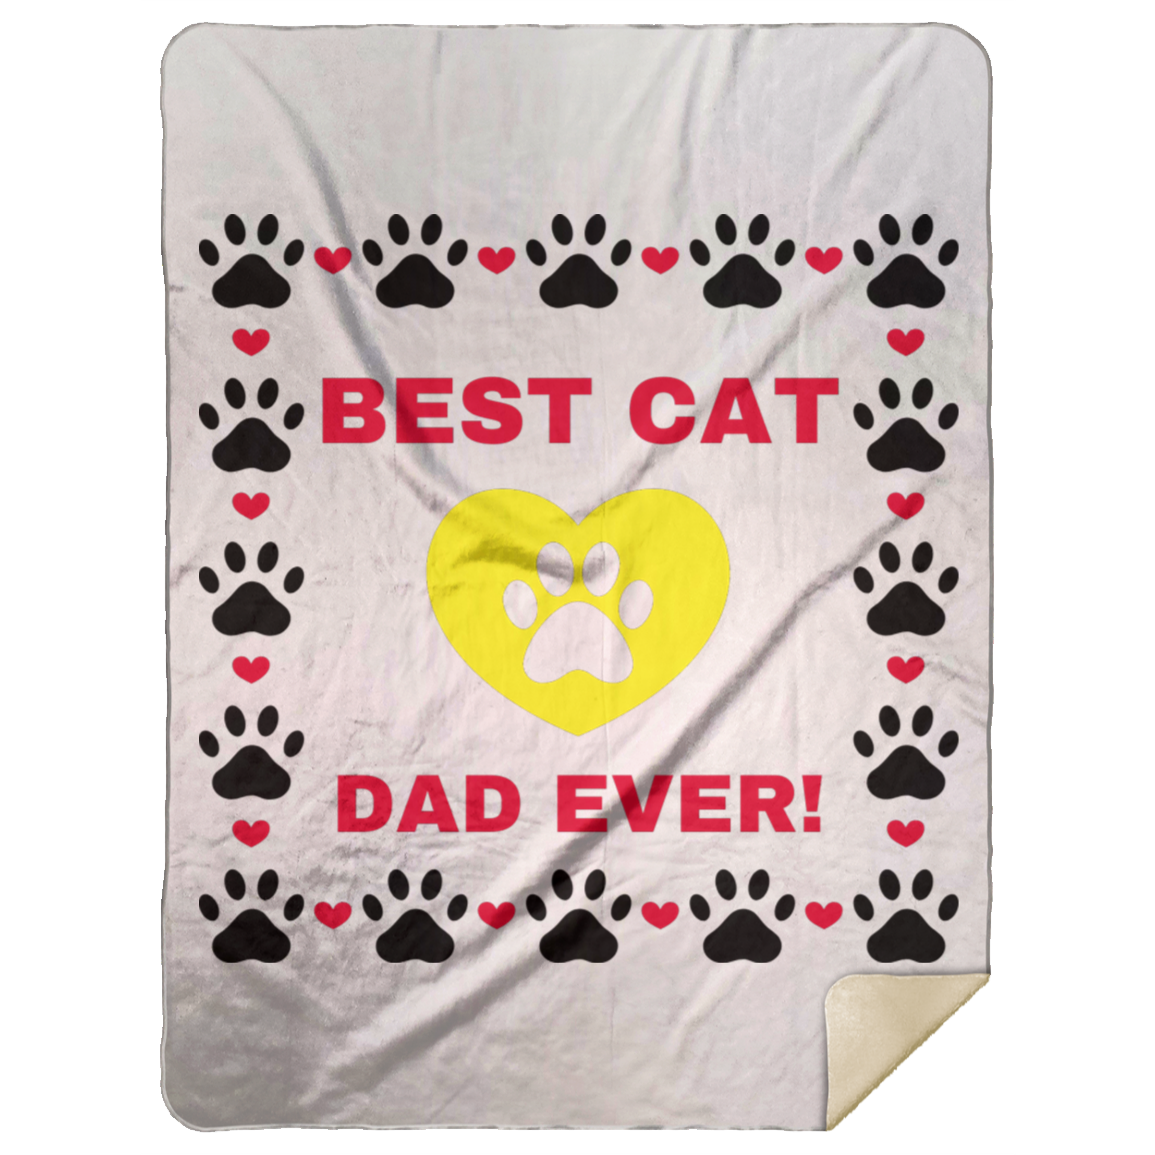 BEST CAT DAD EVER! Premium Mink Sherpa Blanket 60x80